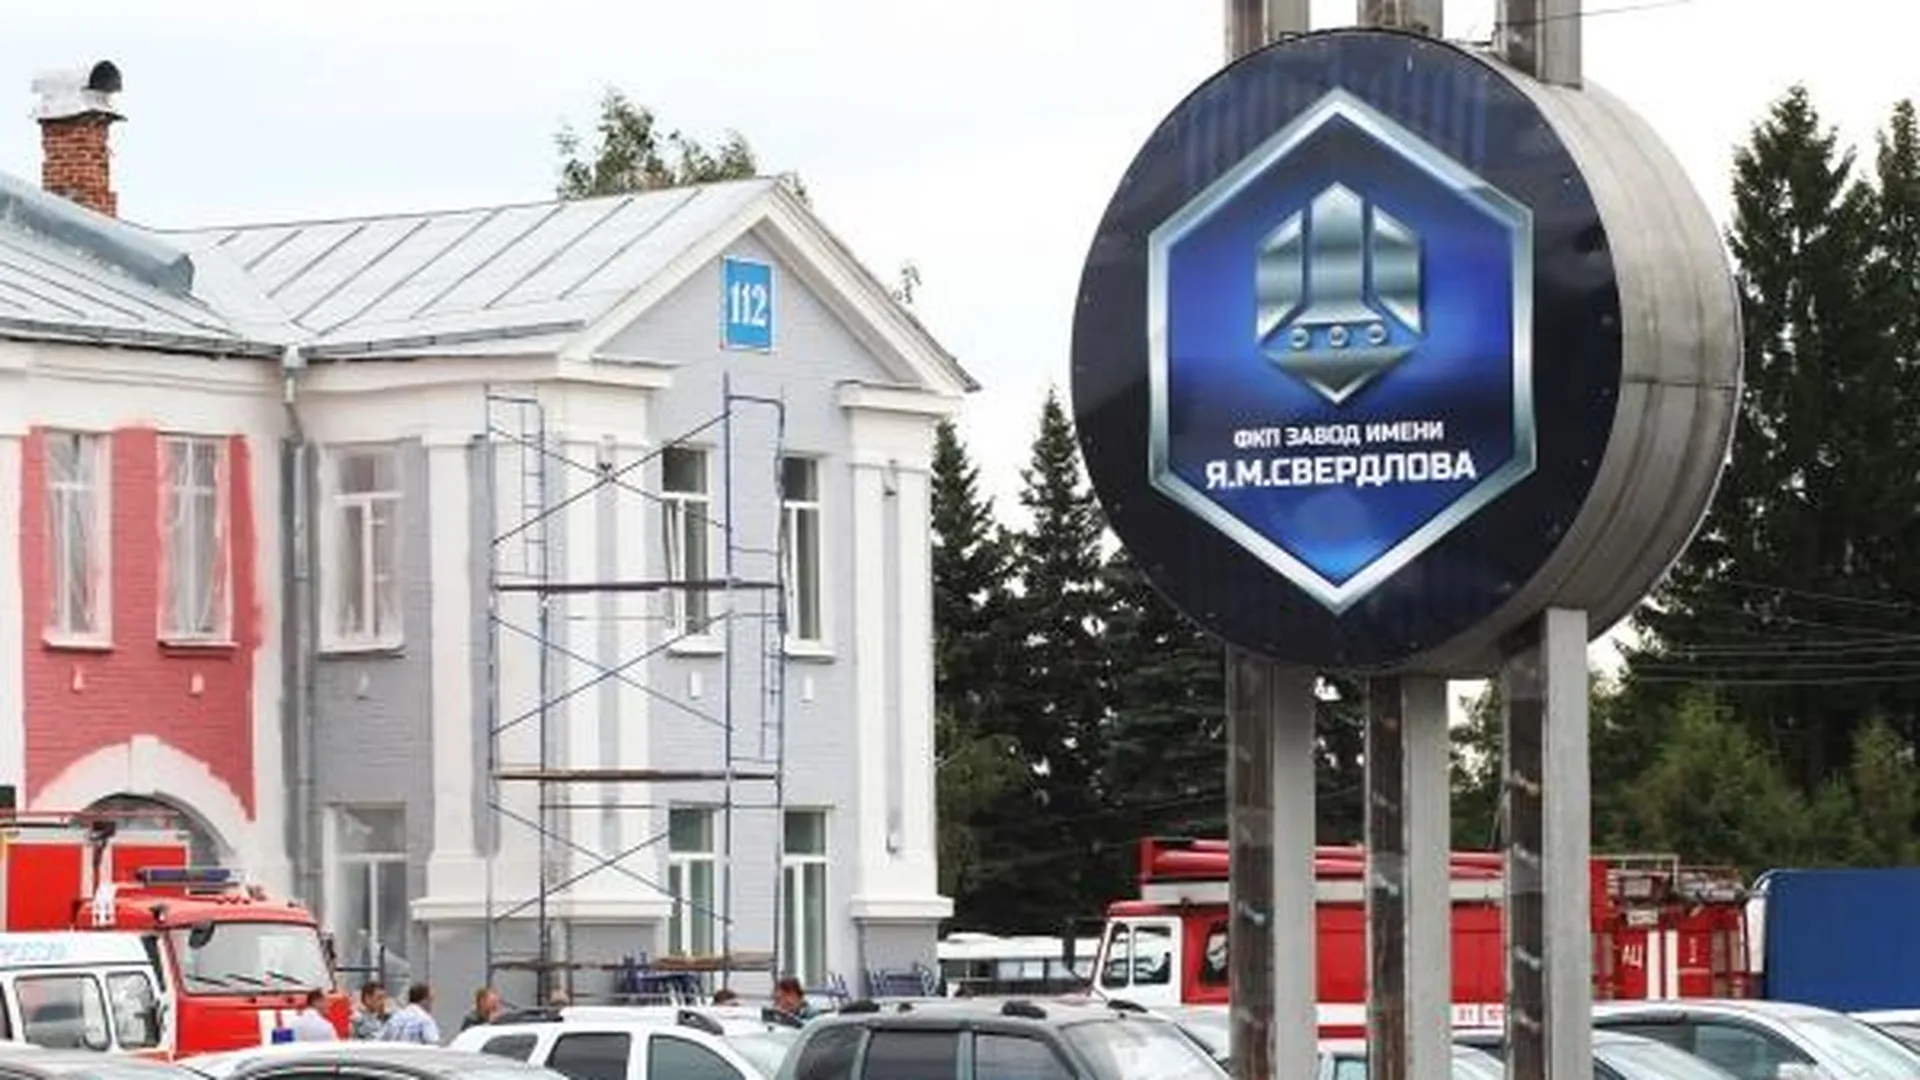 Работники завода в Нижегородской области отдали часть зарплаты участникам спецоперации